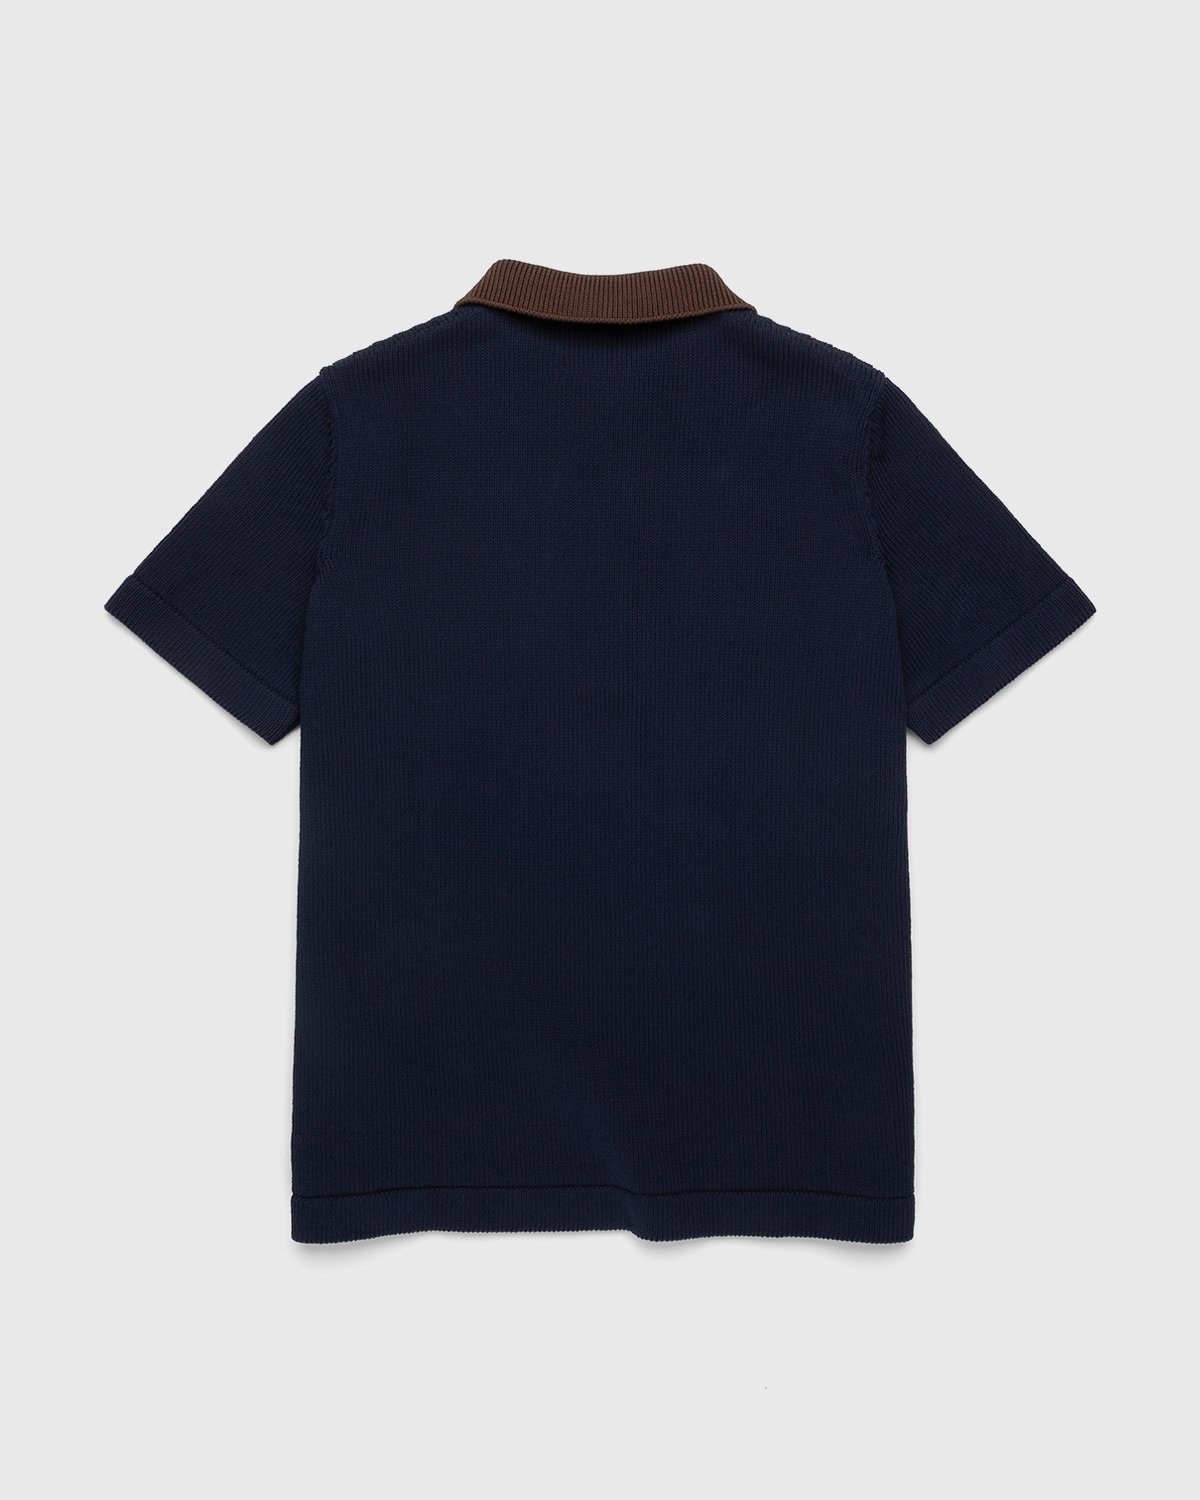 Jil Sander - Short Sleeve Knit Shirt Dark Blue - Clothing - Blue - Image 2